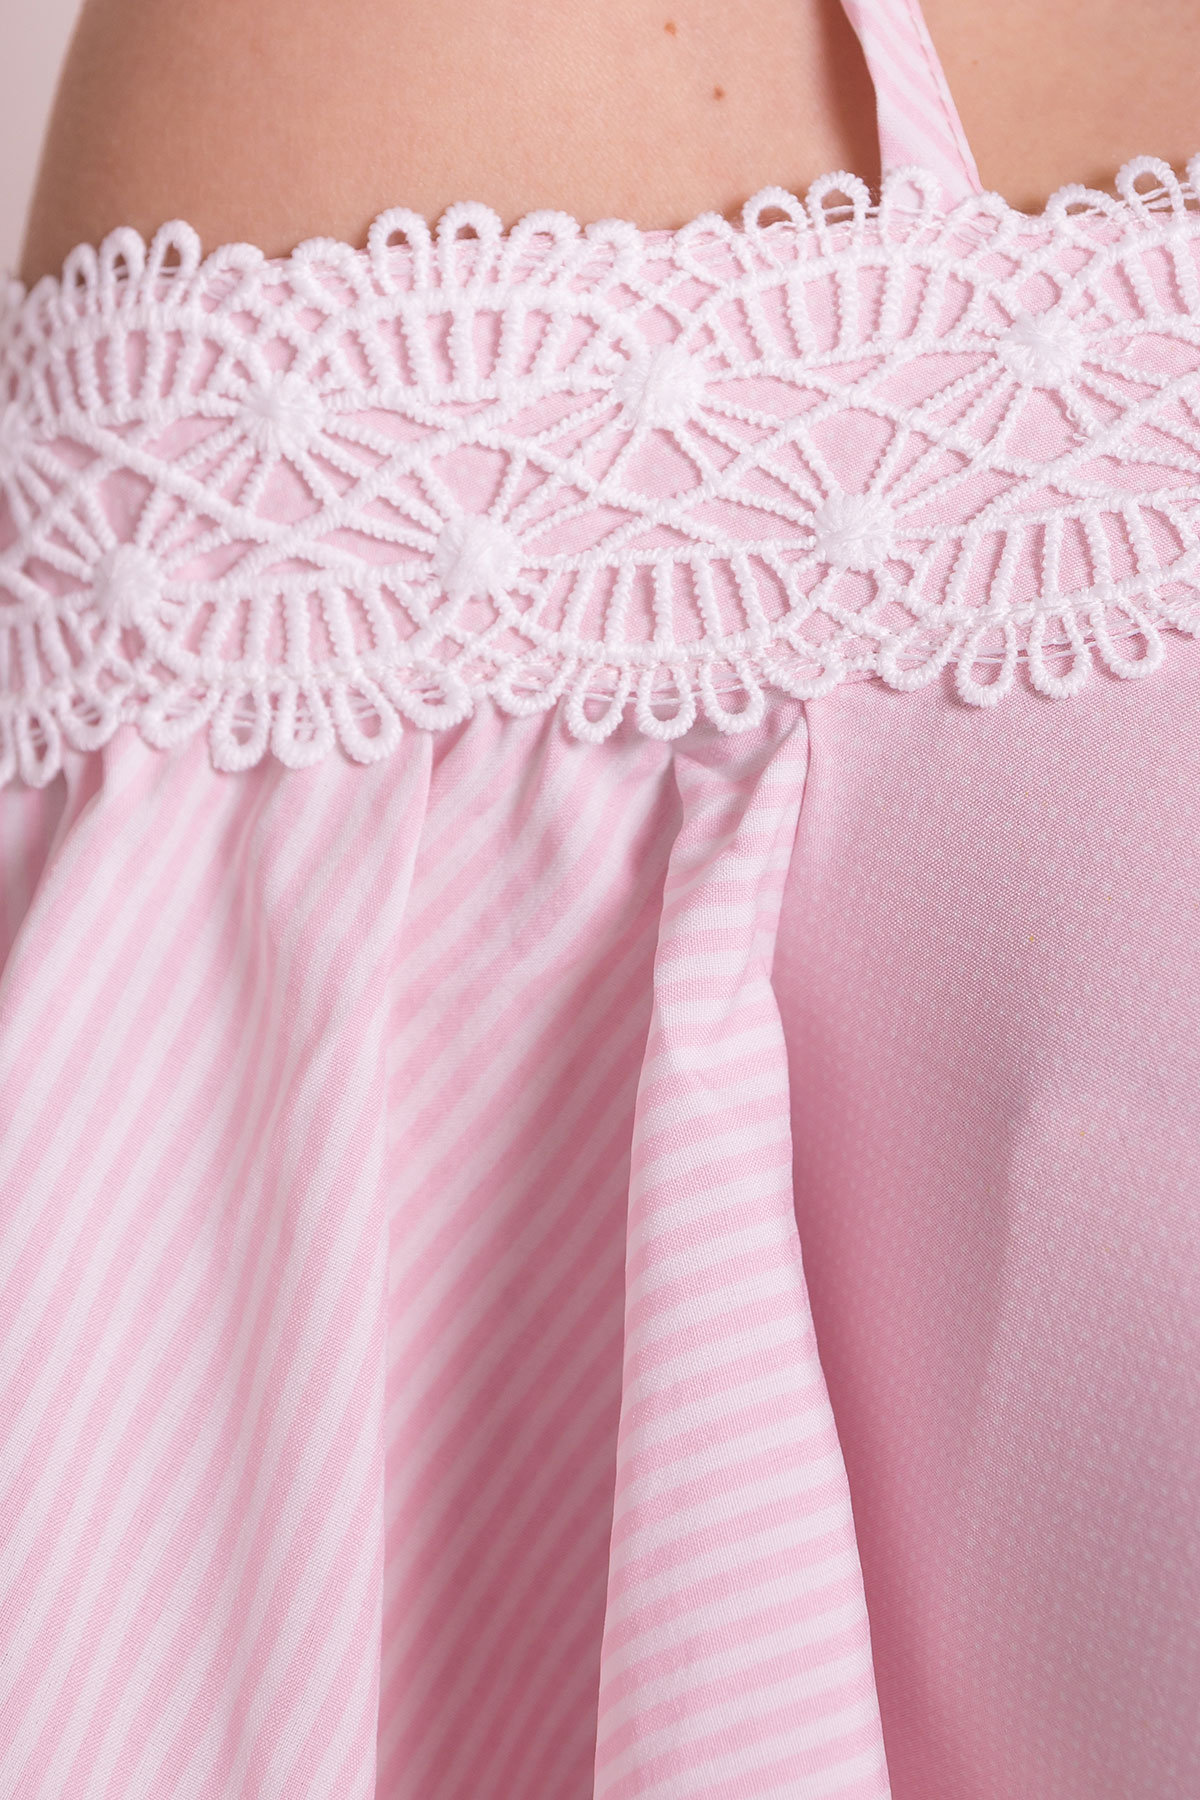 Платье Виолетта 4984 Цвет: Розовый/молоко горох 1